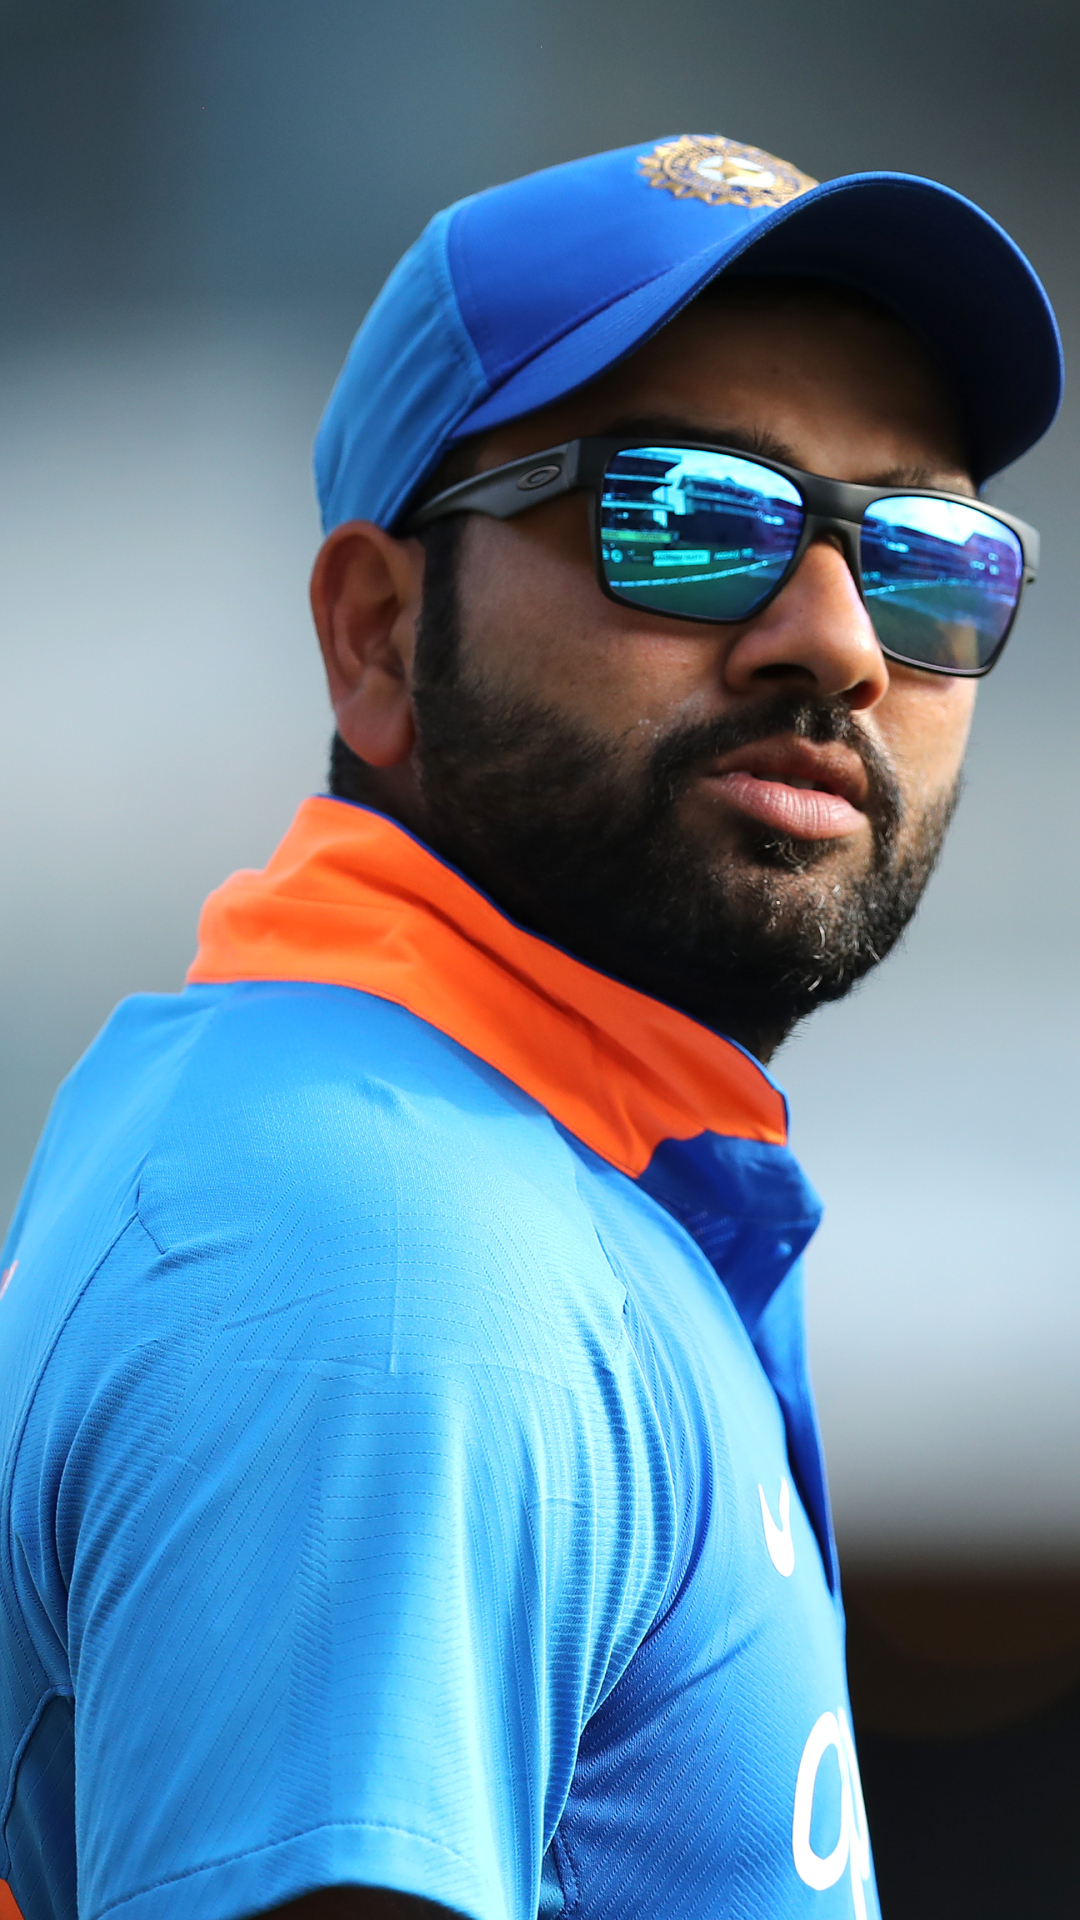 ईडन गार्डन्स में भारत के लिए वनडे में सबसे बड़ा स्कोर करने वाले टॉप 5 भारतीय बल्लेबाज